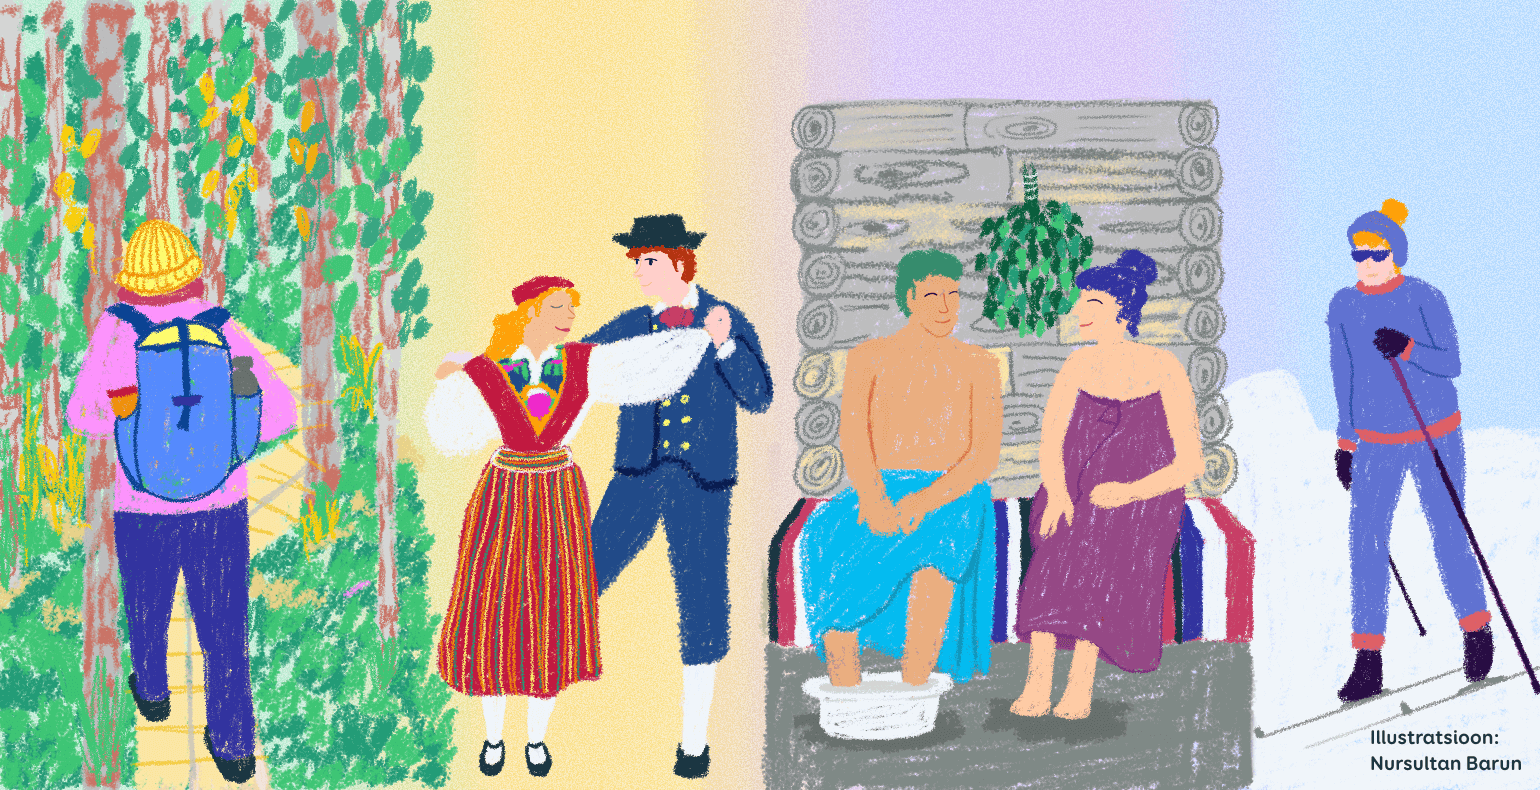 Pilt Eesti traditsioonidest: rahvariietes paar tantsib rahvatantsu, teine paar istub saunas, üks inimene suusatab ja teine jalutab metsas.